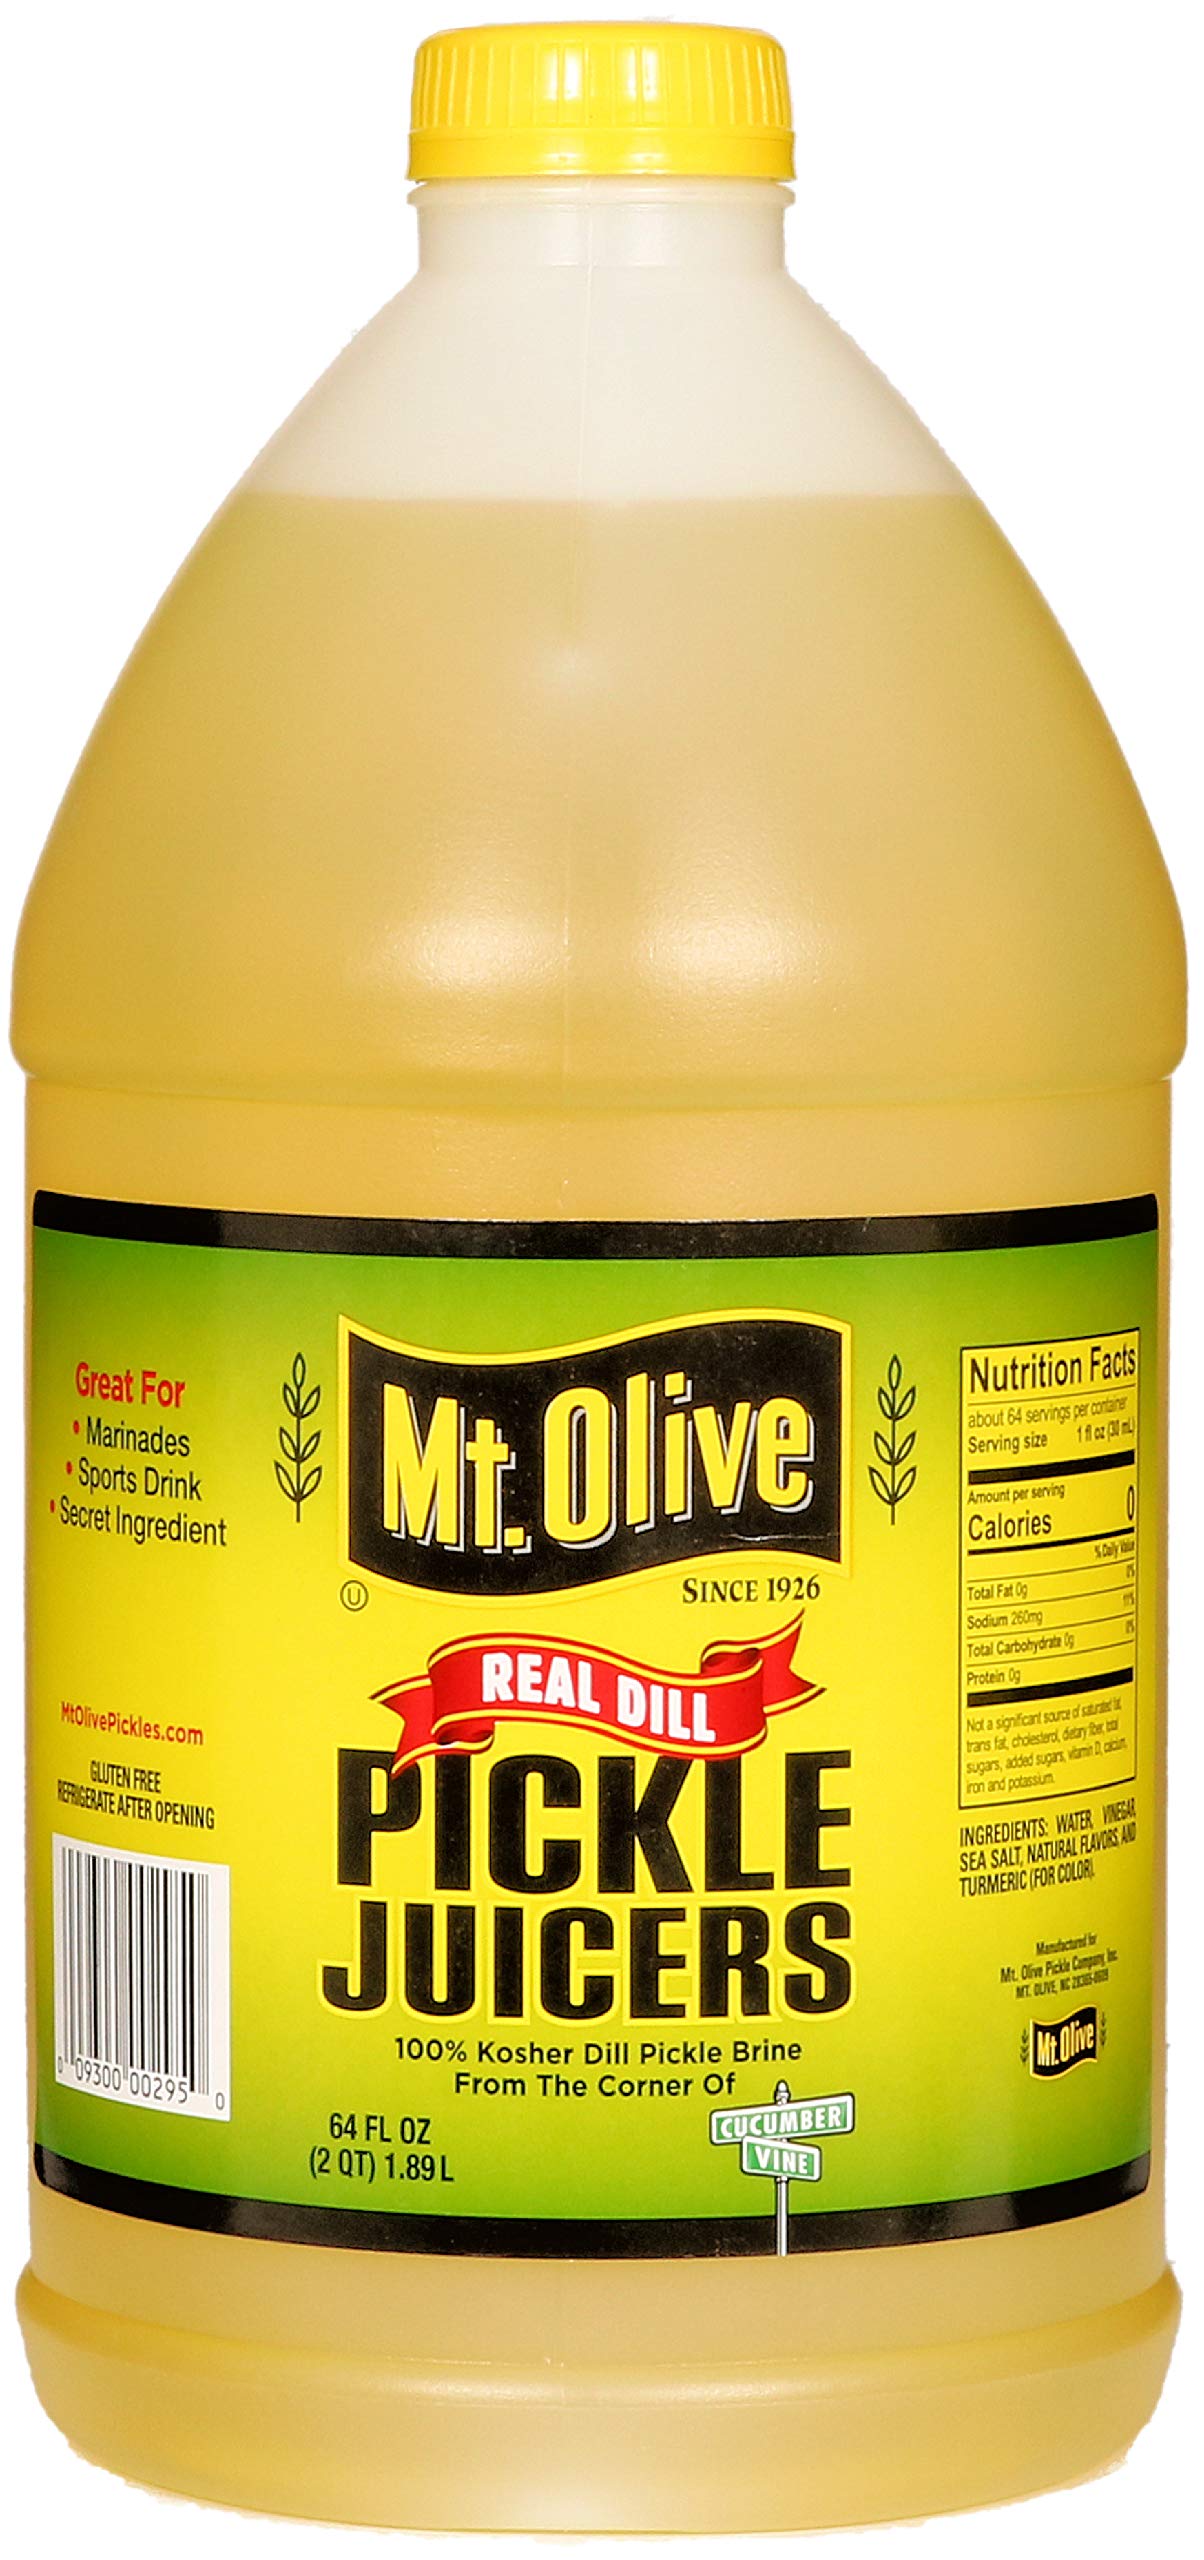 Mt. Olive Pickle Juicers